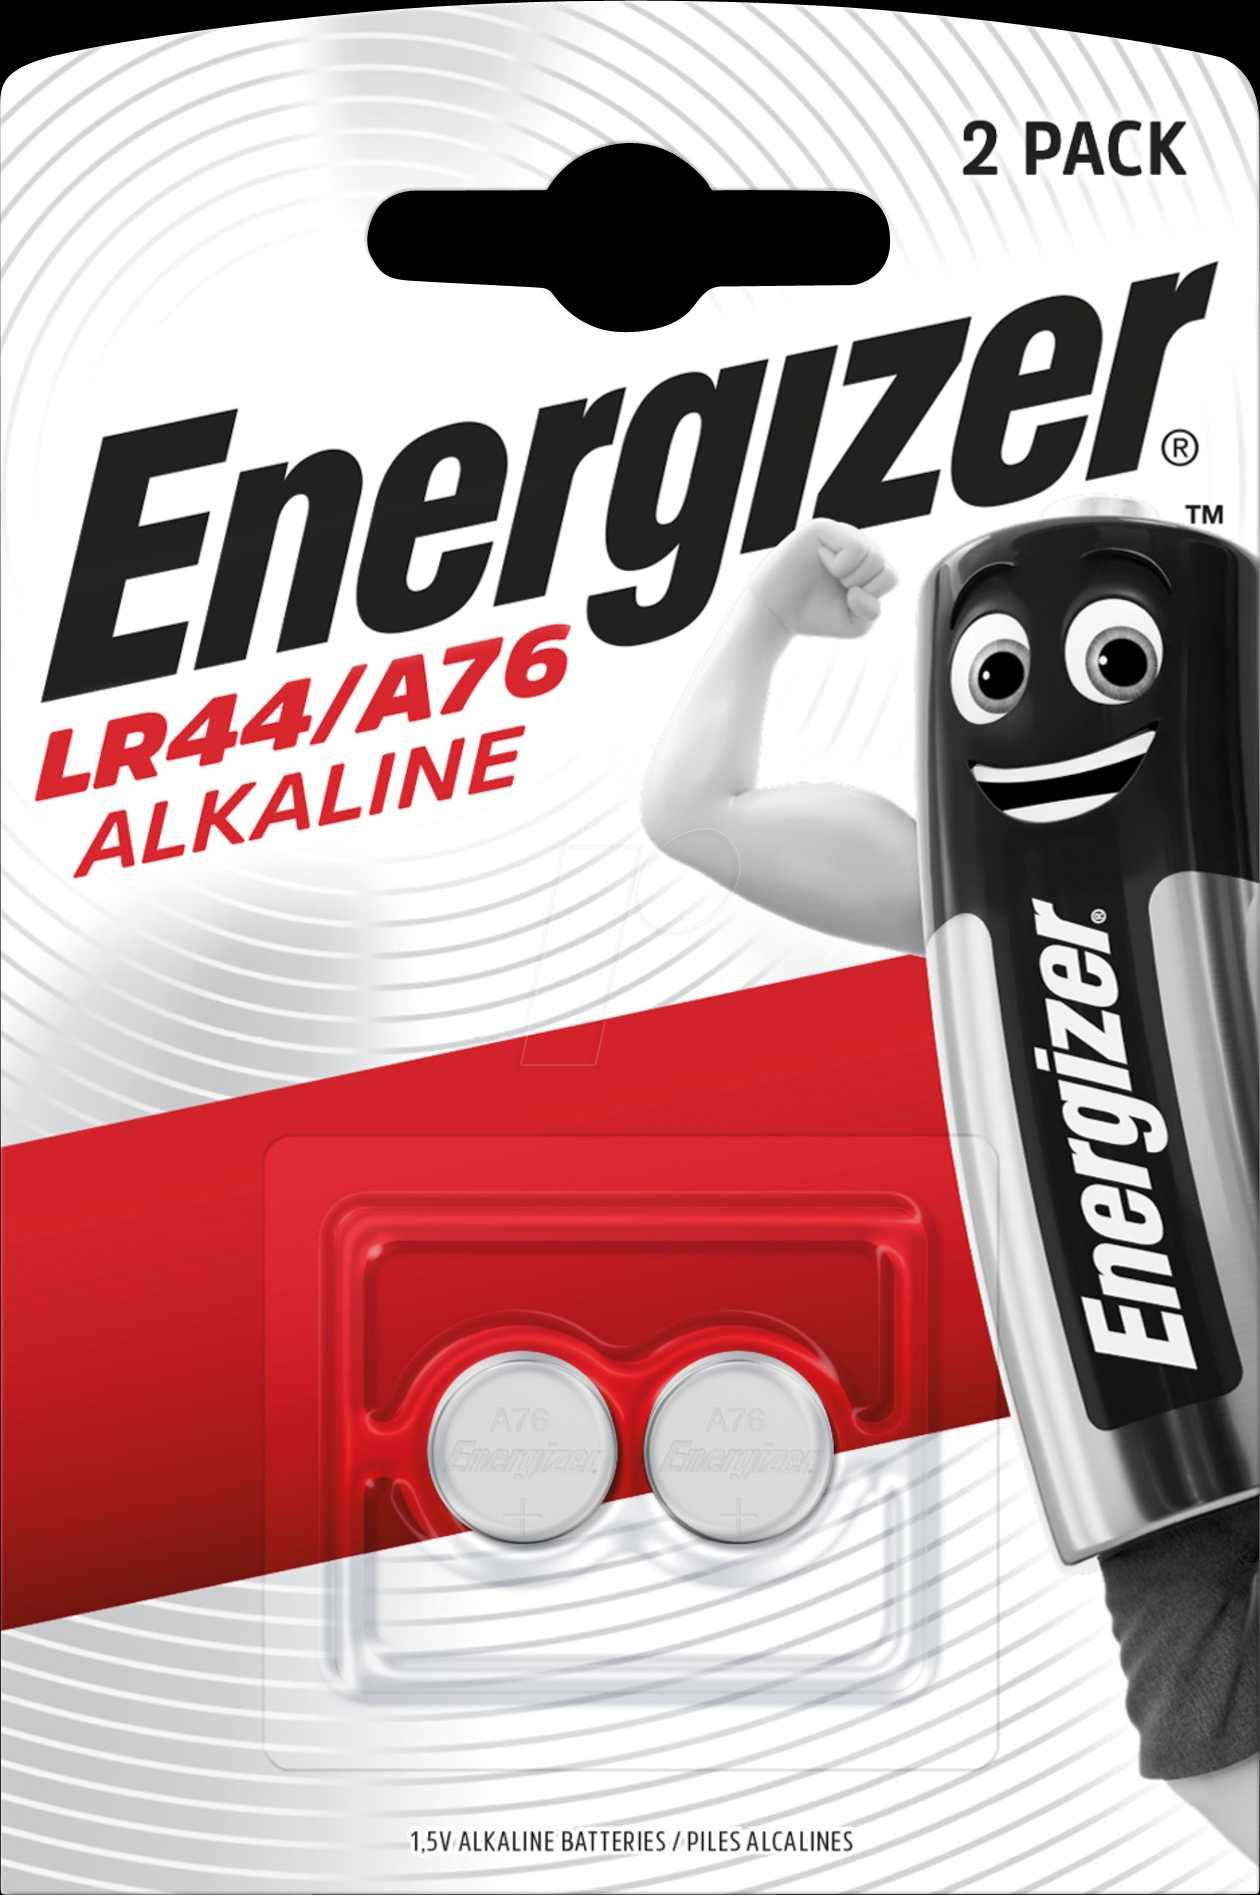 Батарейки LR44 Energizer LR44/A76,G13, AG13. Цена за уп. 20 шт